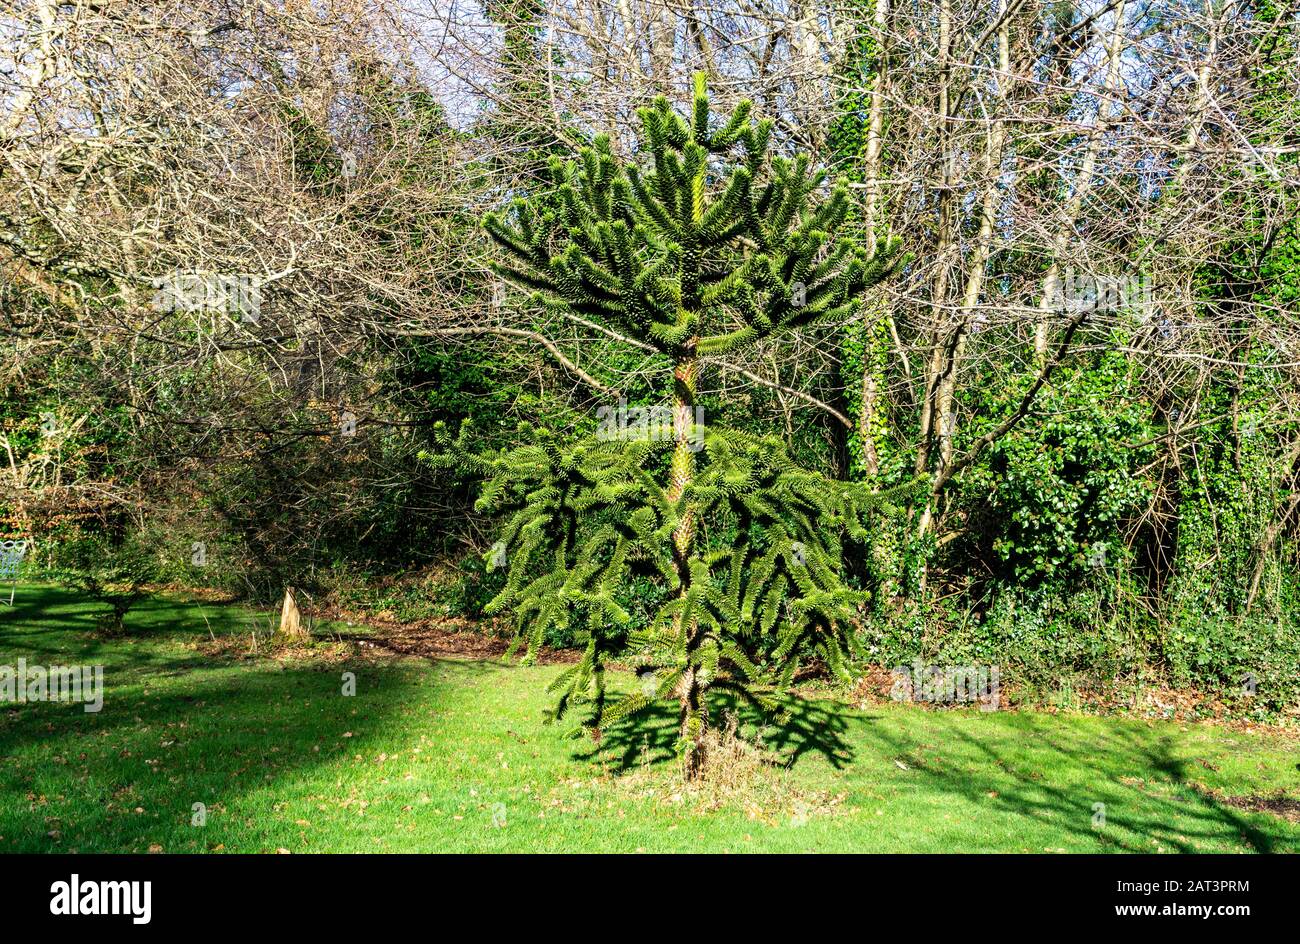 Un Rompecabezas Monkey Tree, Araucaria Araucana, visto aquí en un entorno de parques. Foto de stock